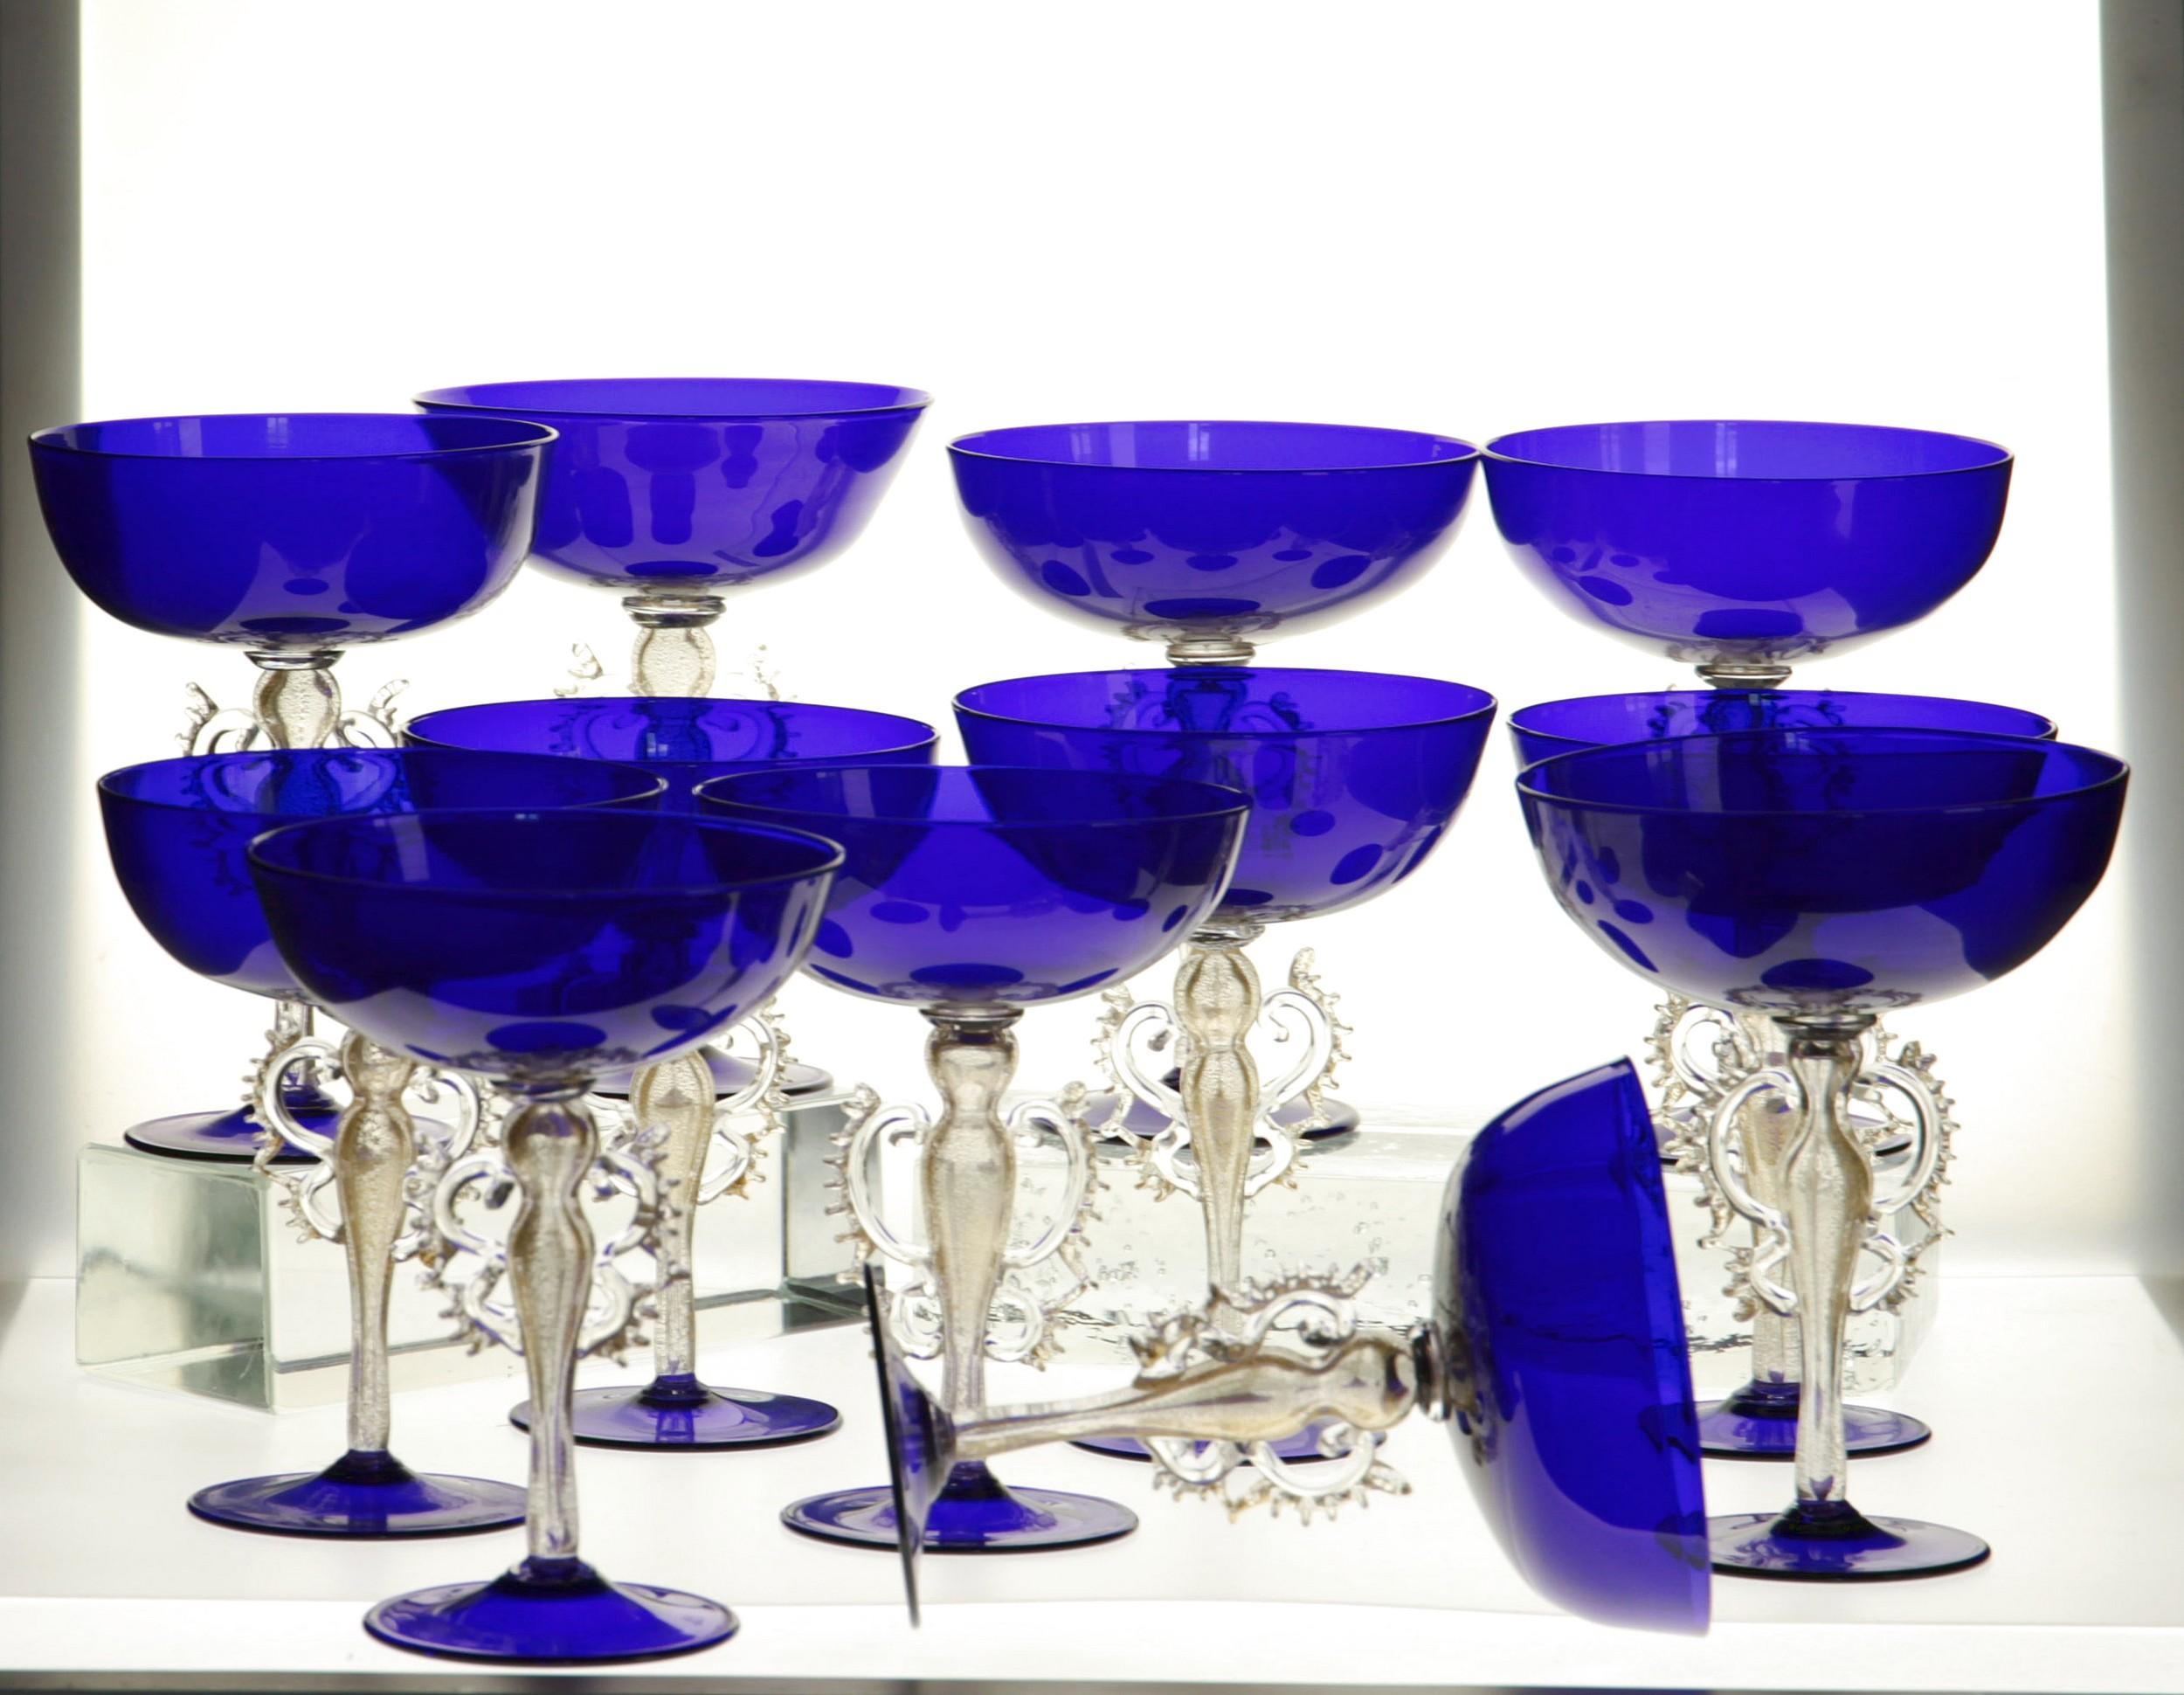 Äußerst seltener Satz von Glaspokalen.

Die Tasse und der Fuß sind kobaltblau gefärbt. Diese Art von Becher wurde in den 50er und 60er Jahren als Champagnerglas bezeichnet.

Jedes Glas ist mit einem komplexen Barockmotiv auf dem geblasenen Stiel